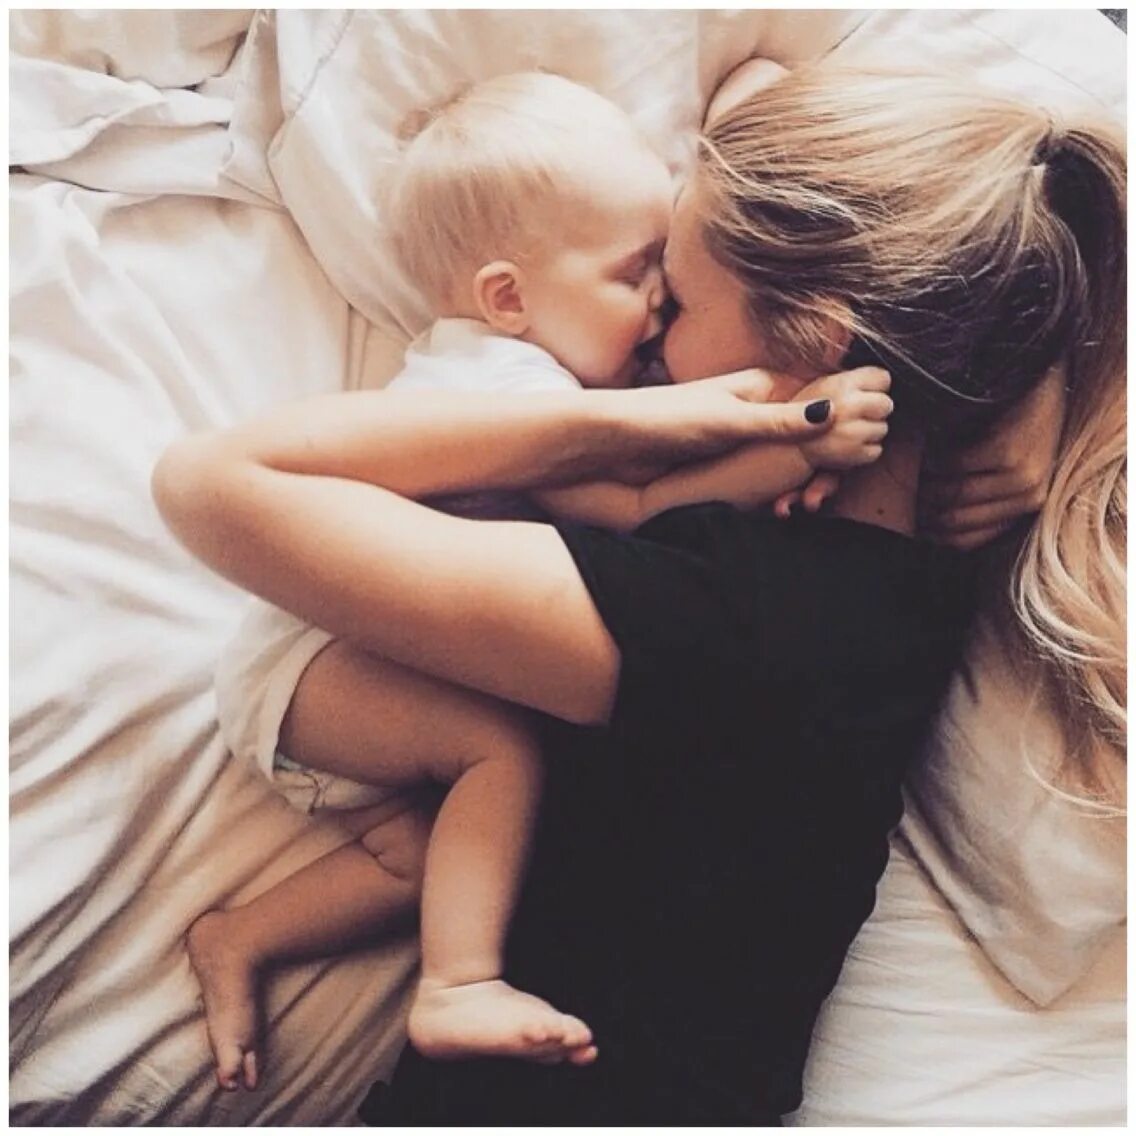 Мама блондинка с малышом. Фотосессия мама с младенцем. Блондинка с ребенком на руках. Объятия мамы и ребенка.